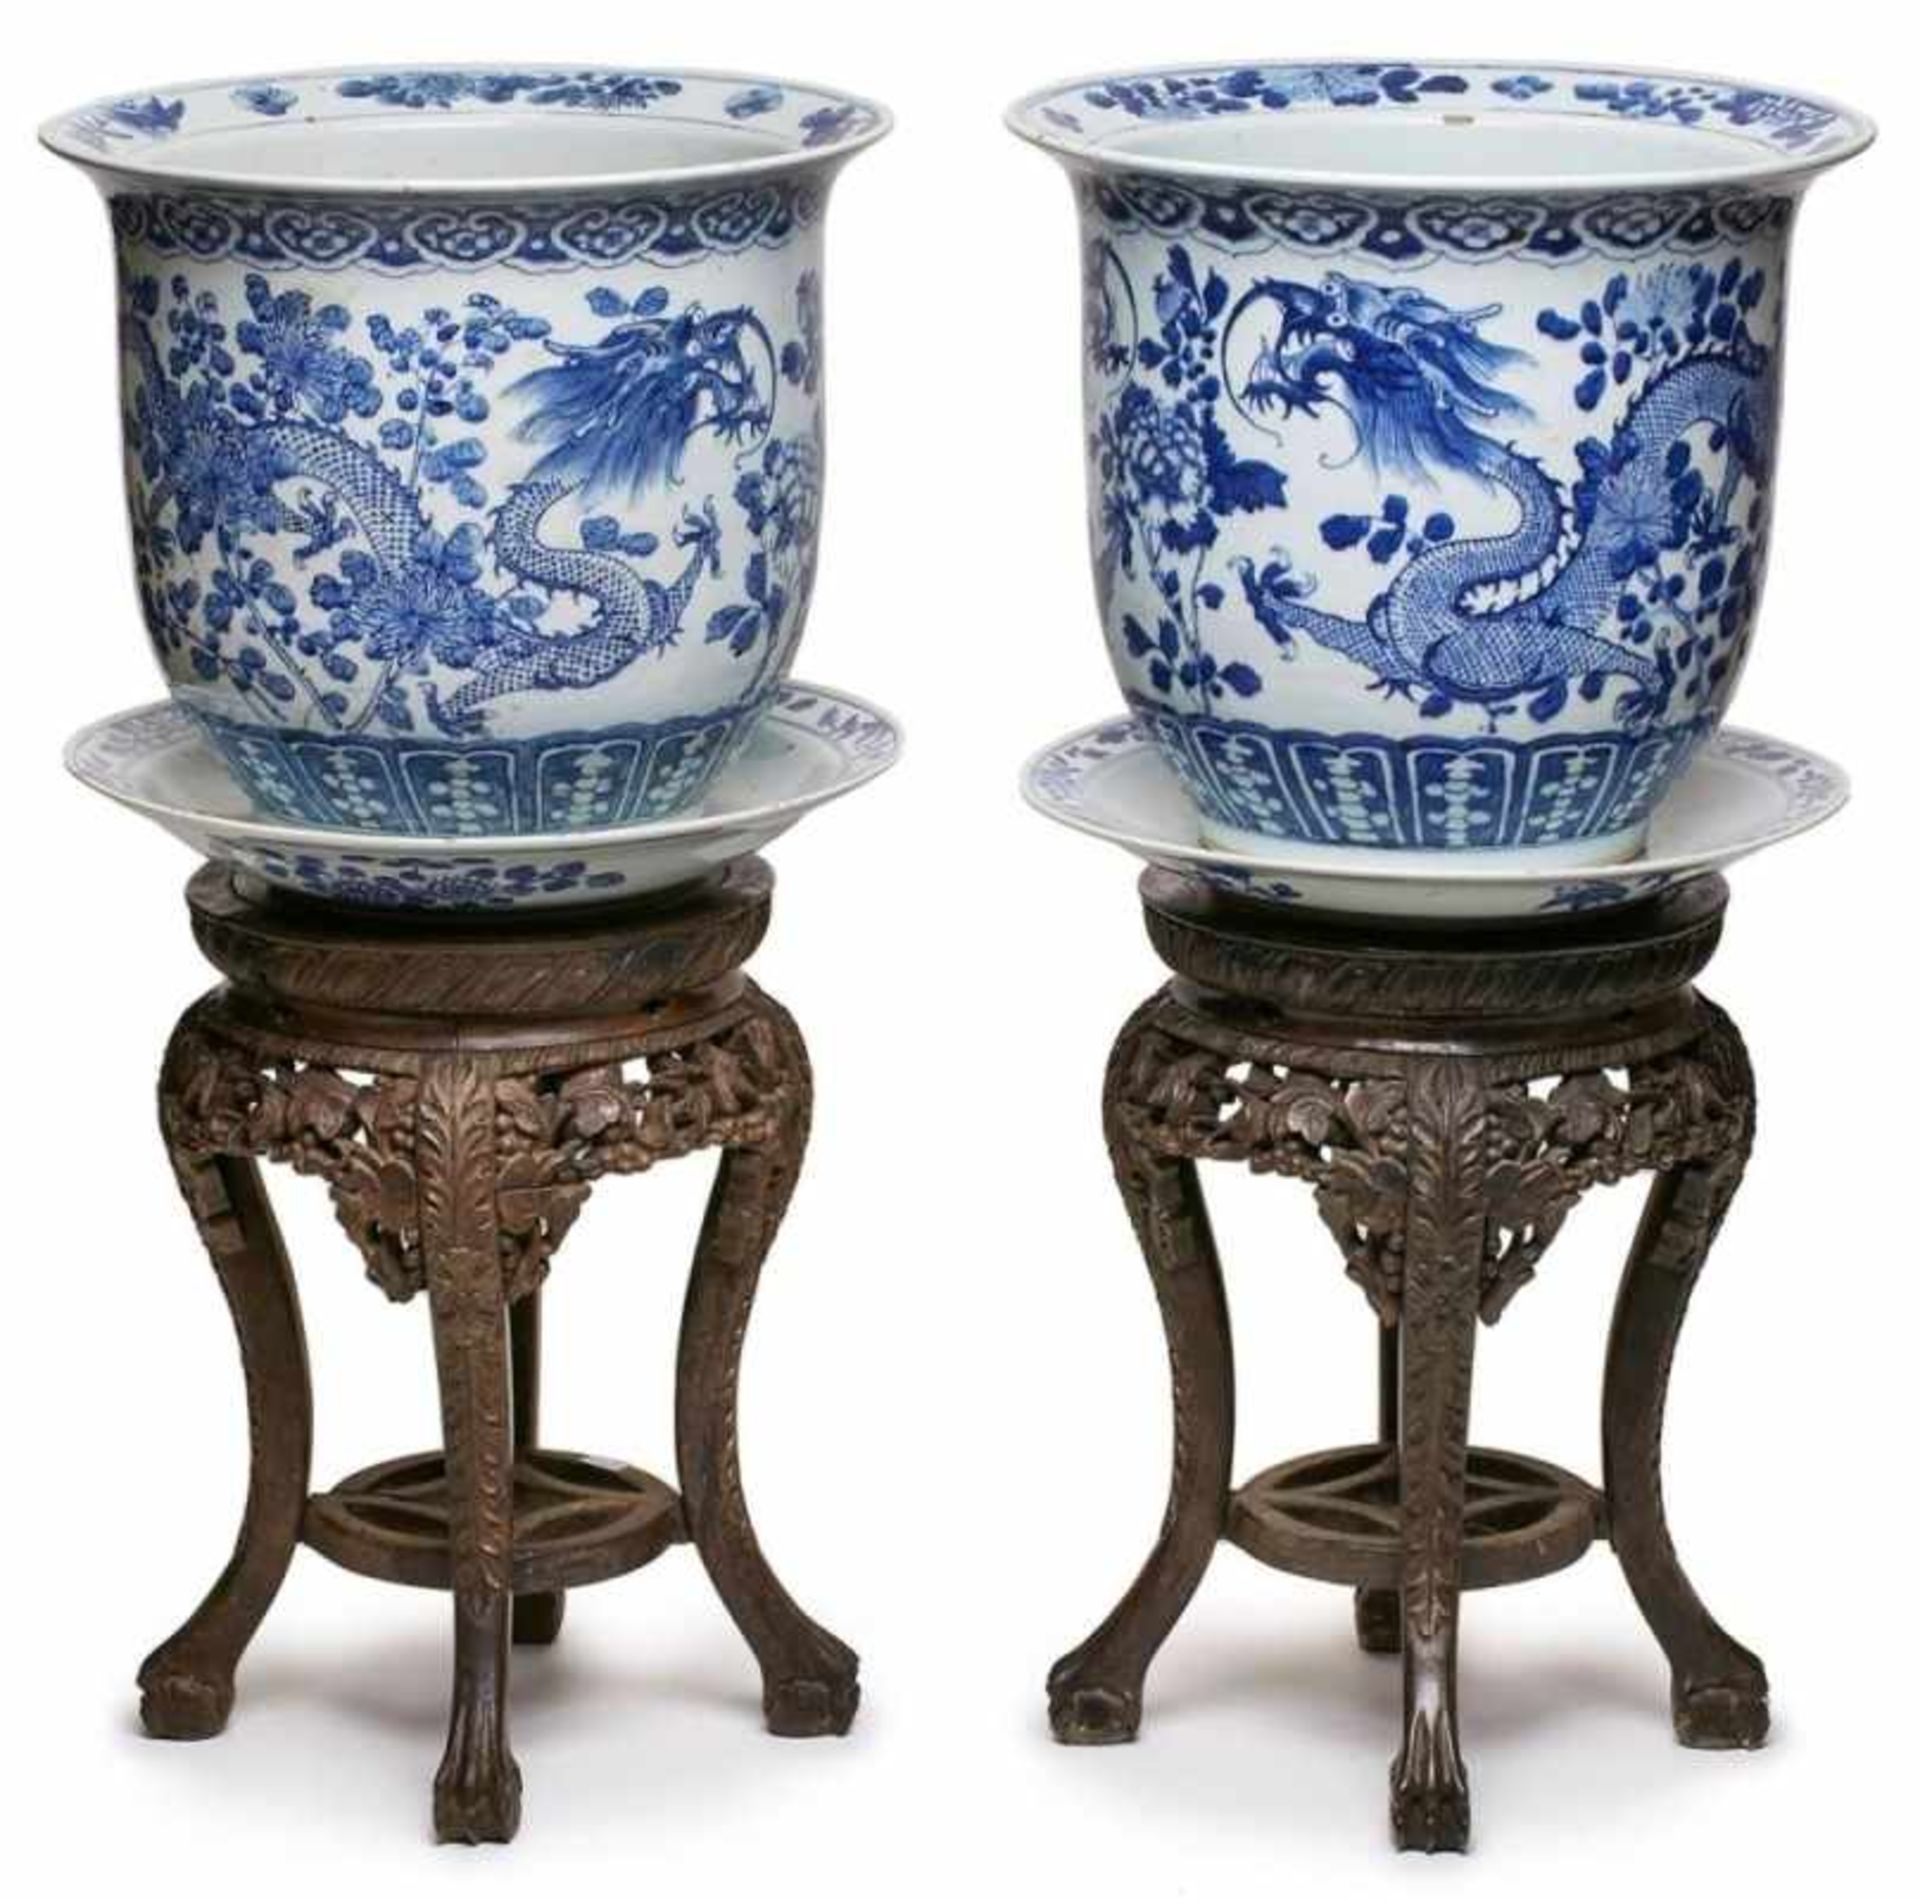 Paar gr. Cachepots mit Unterschalen,China wohl Mitte 19. Jh. Porzellan m. Blaumalerei-Dekor.